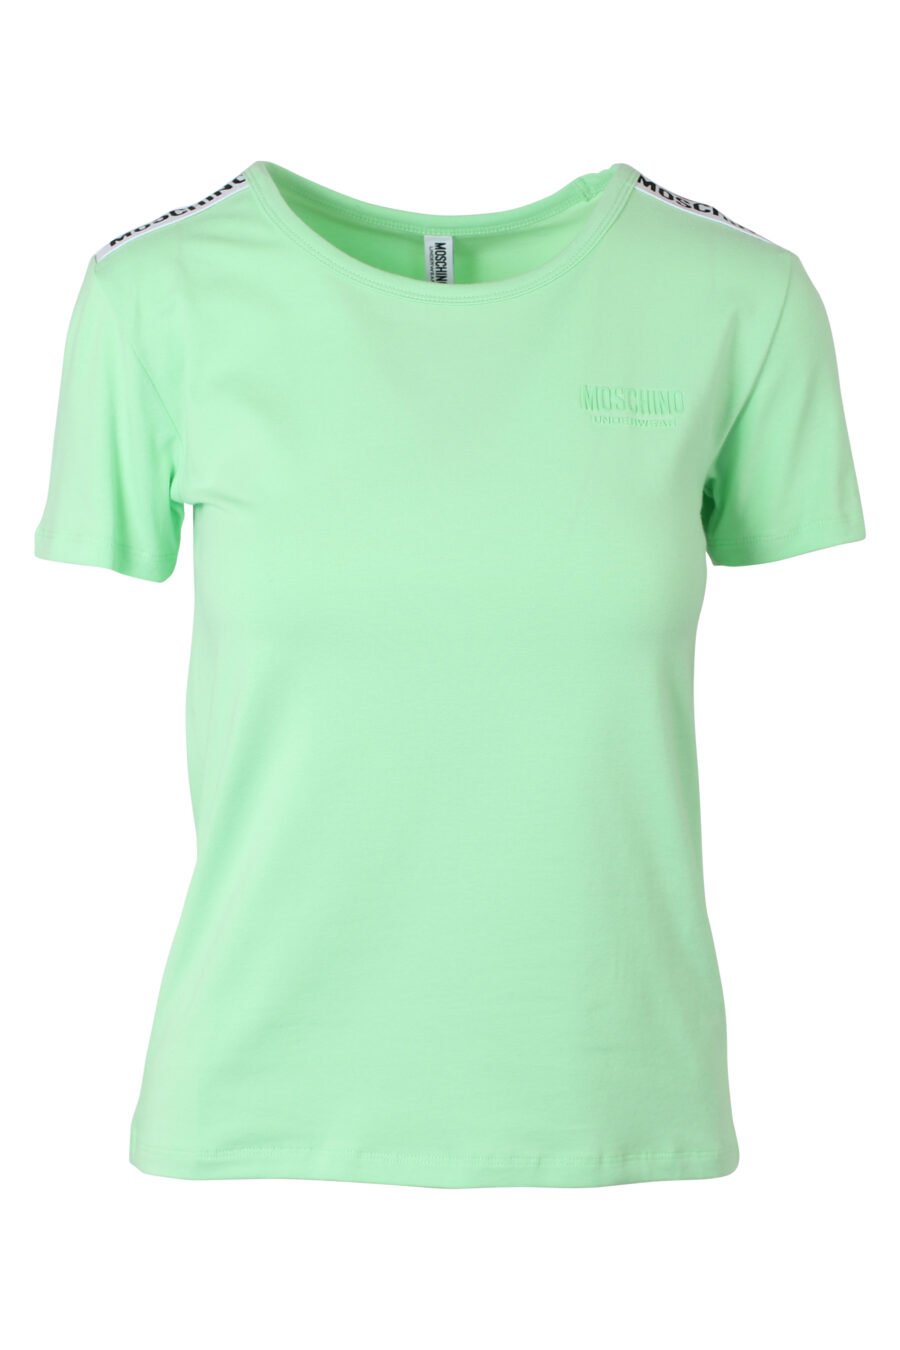 Mintgrünes, schmal geschnittenes T-Shirt mit Logoband an den Schultern - IMG 9788